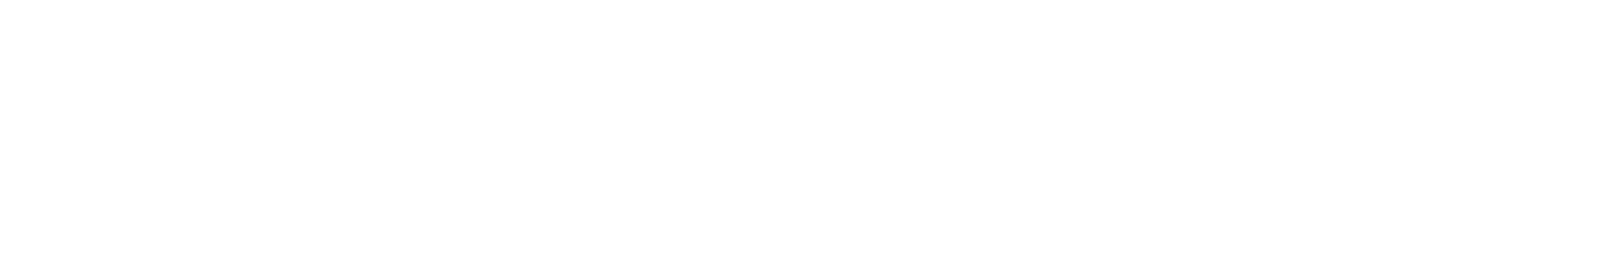 Poshmark logo grand pour les fonds sombres (PNG transparent)